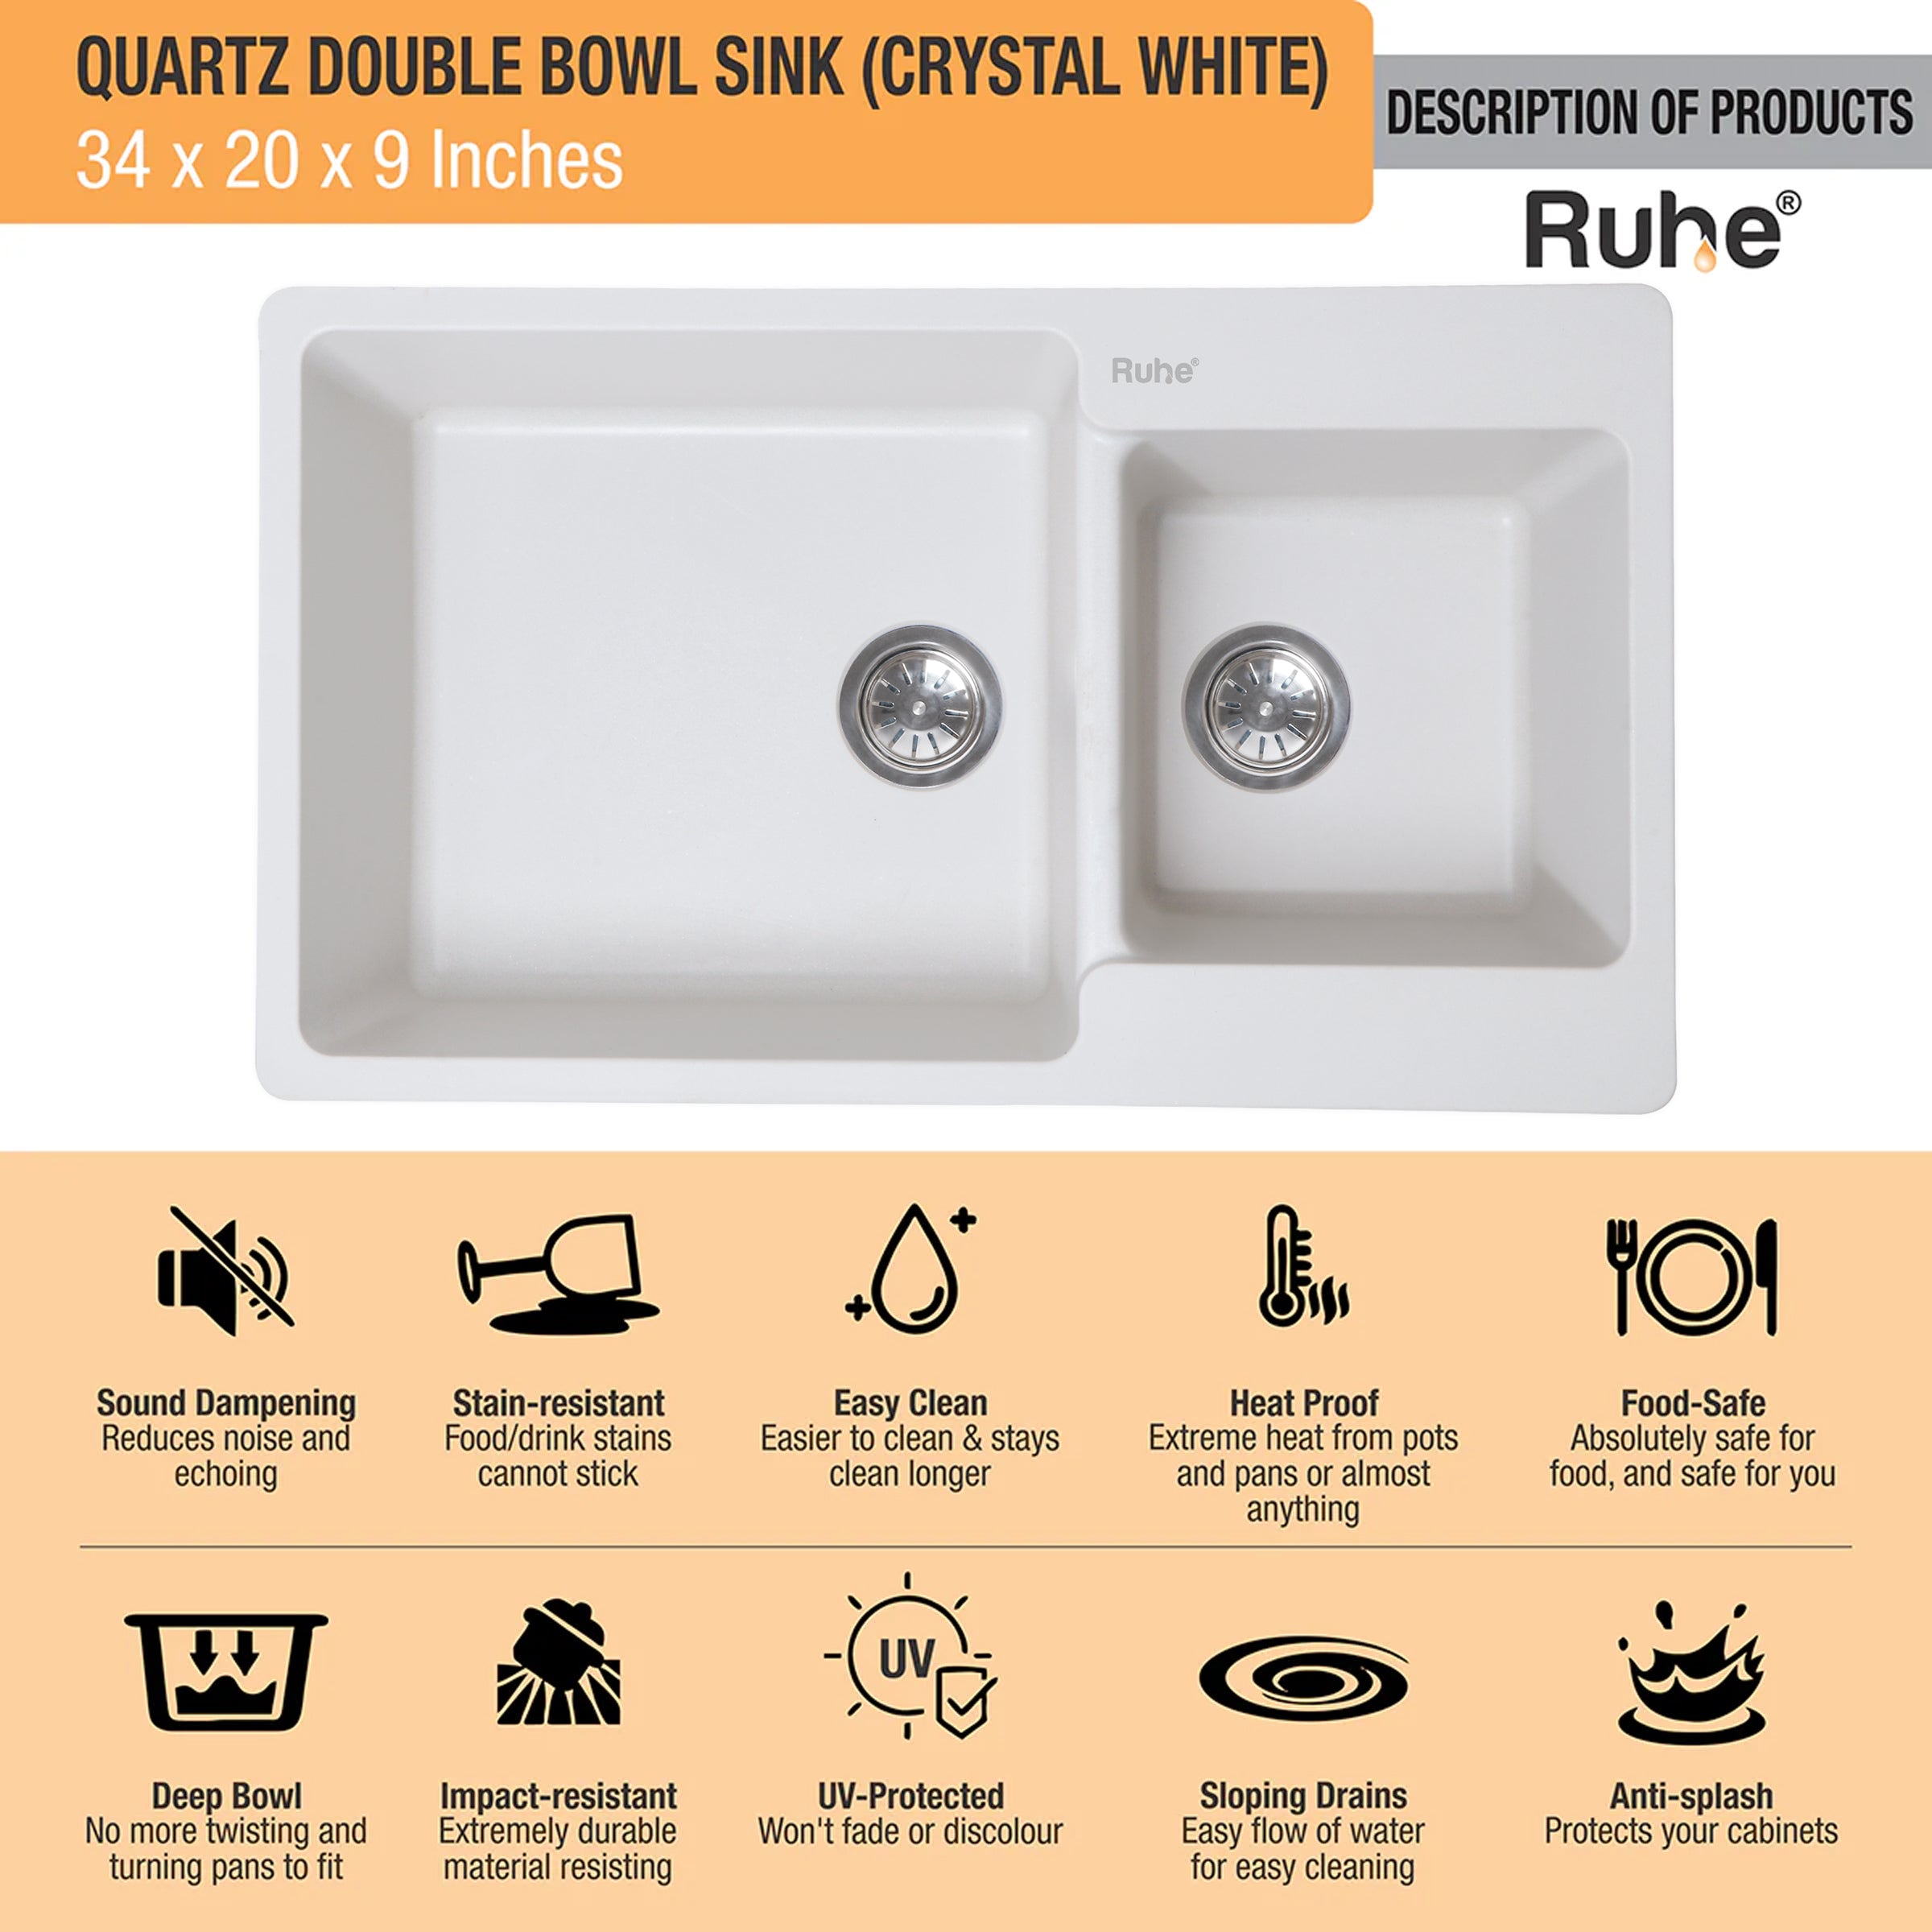 Quartz Black Single Bowl Kitchen Sink (31 x 19 x 9 inches) description of products